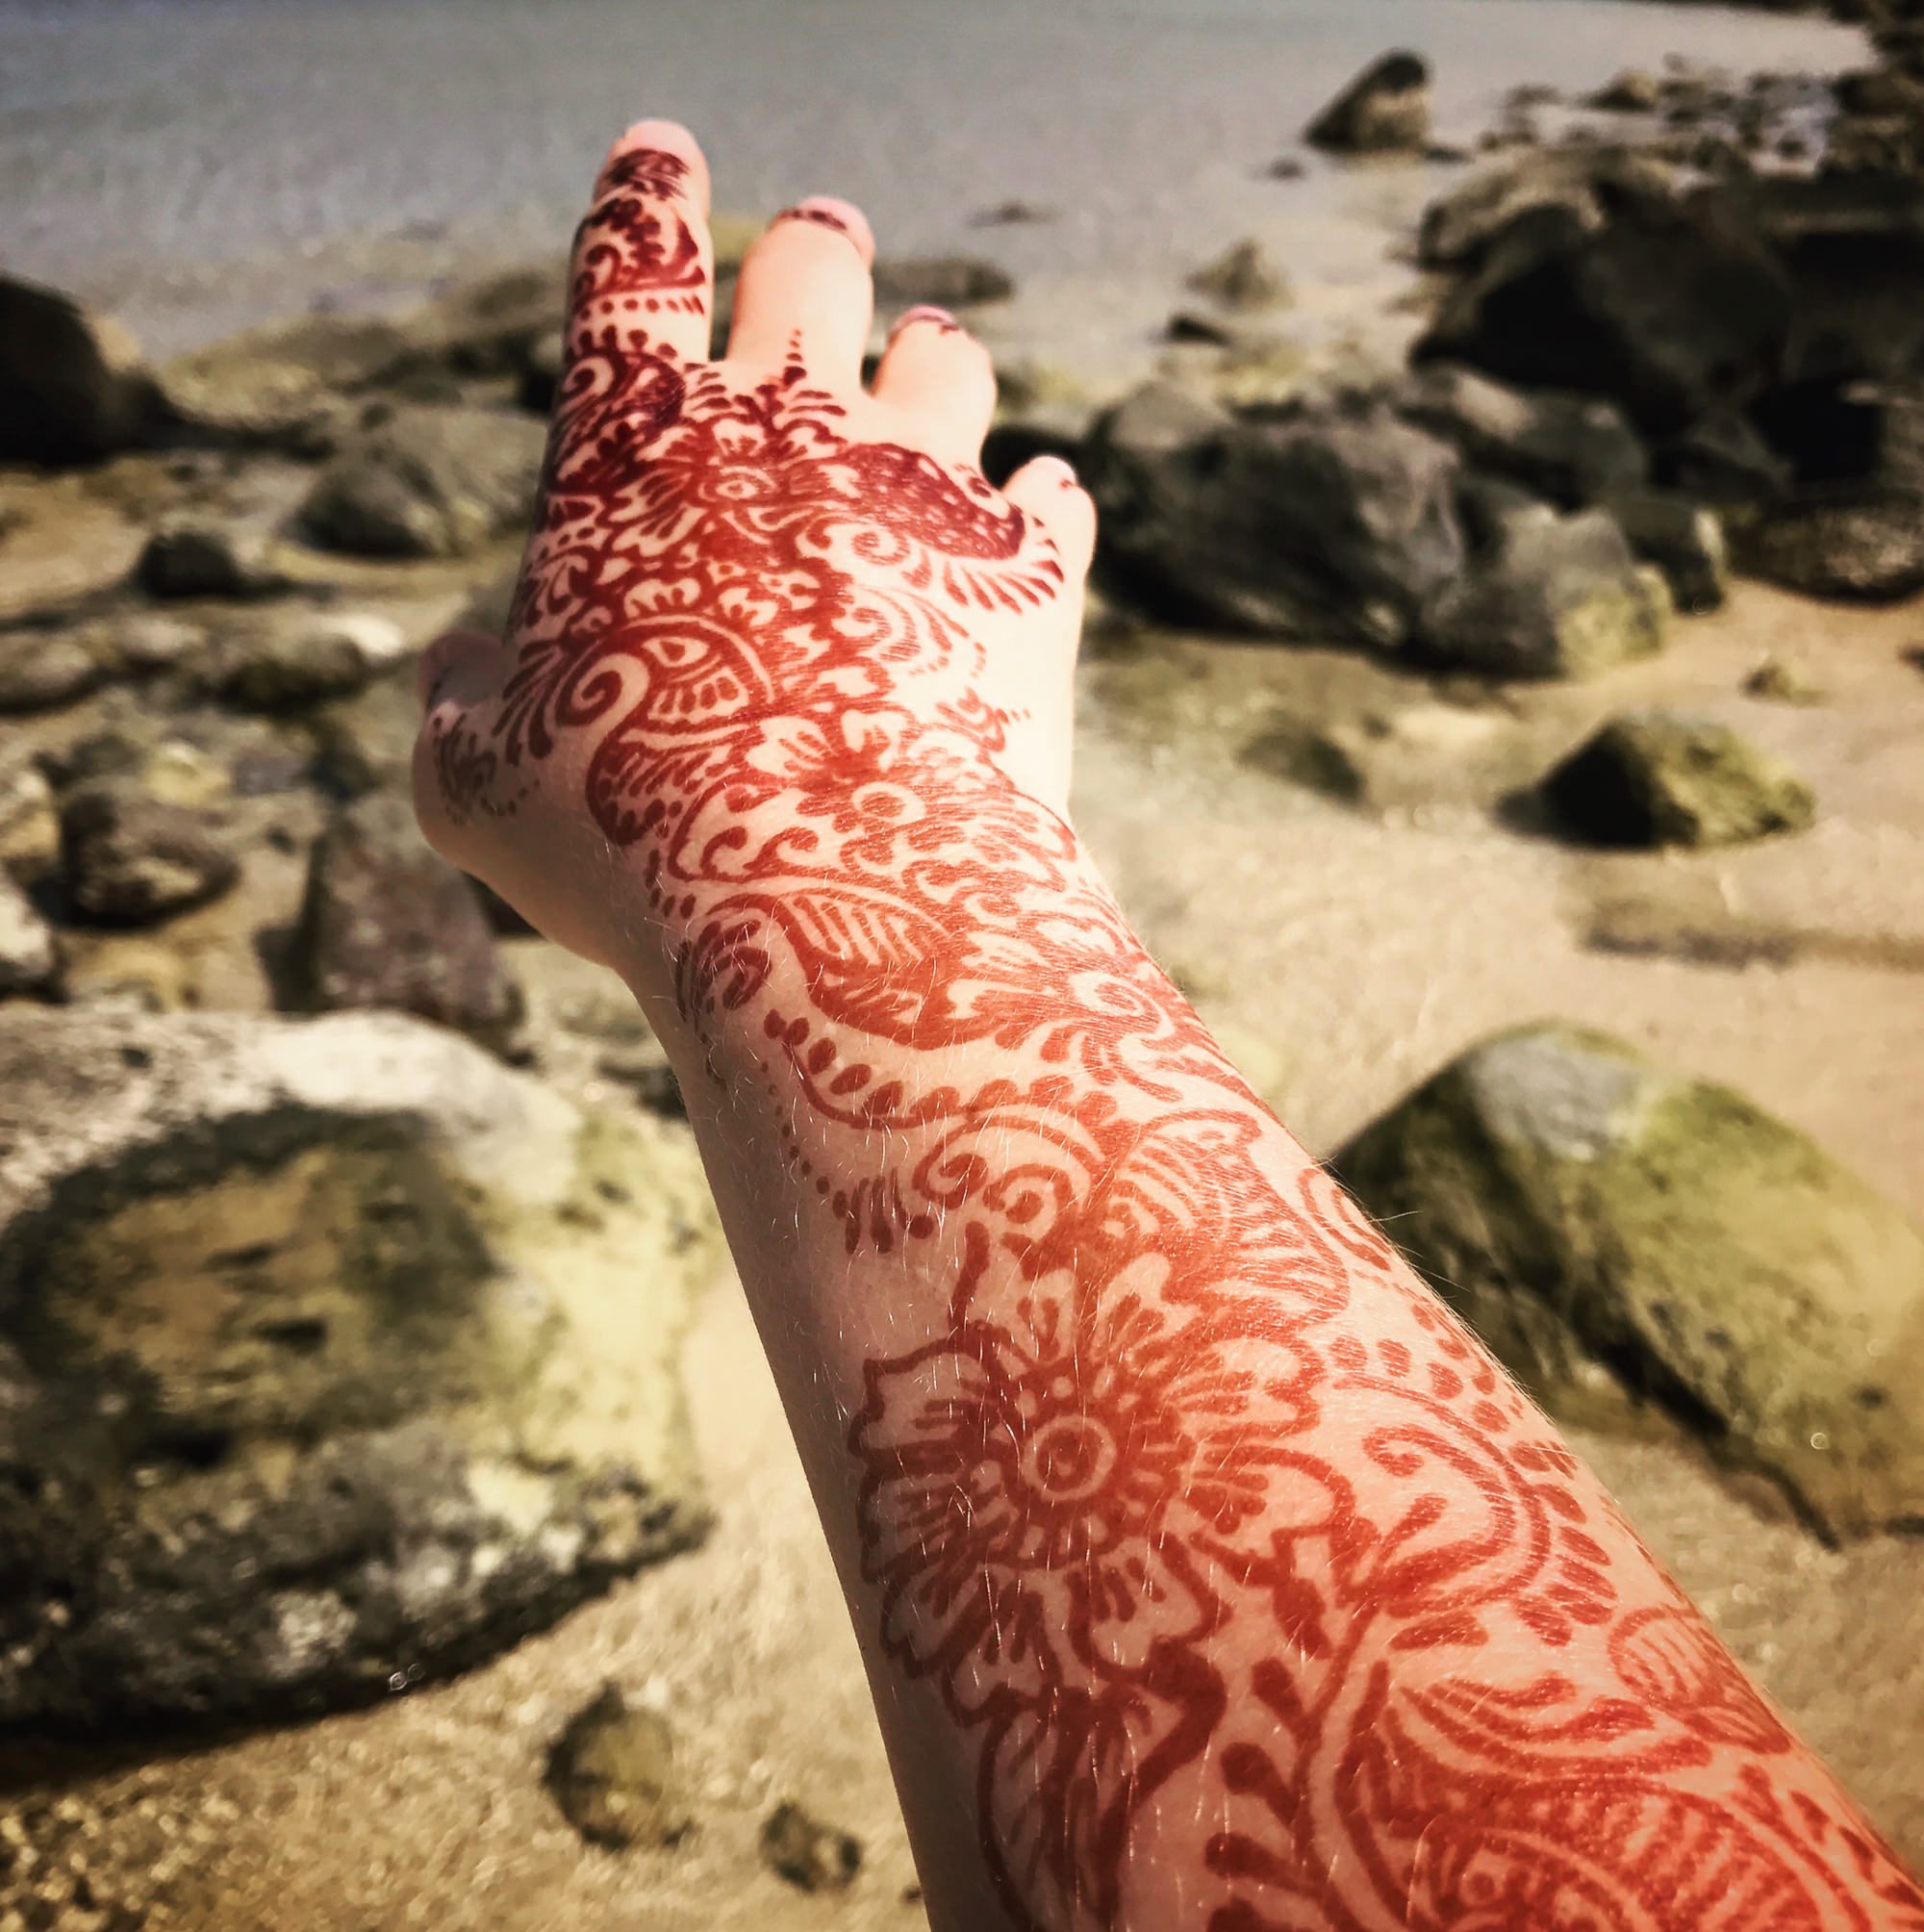 Henna tattoo